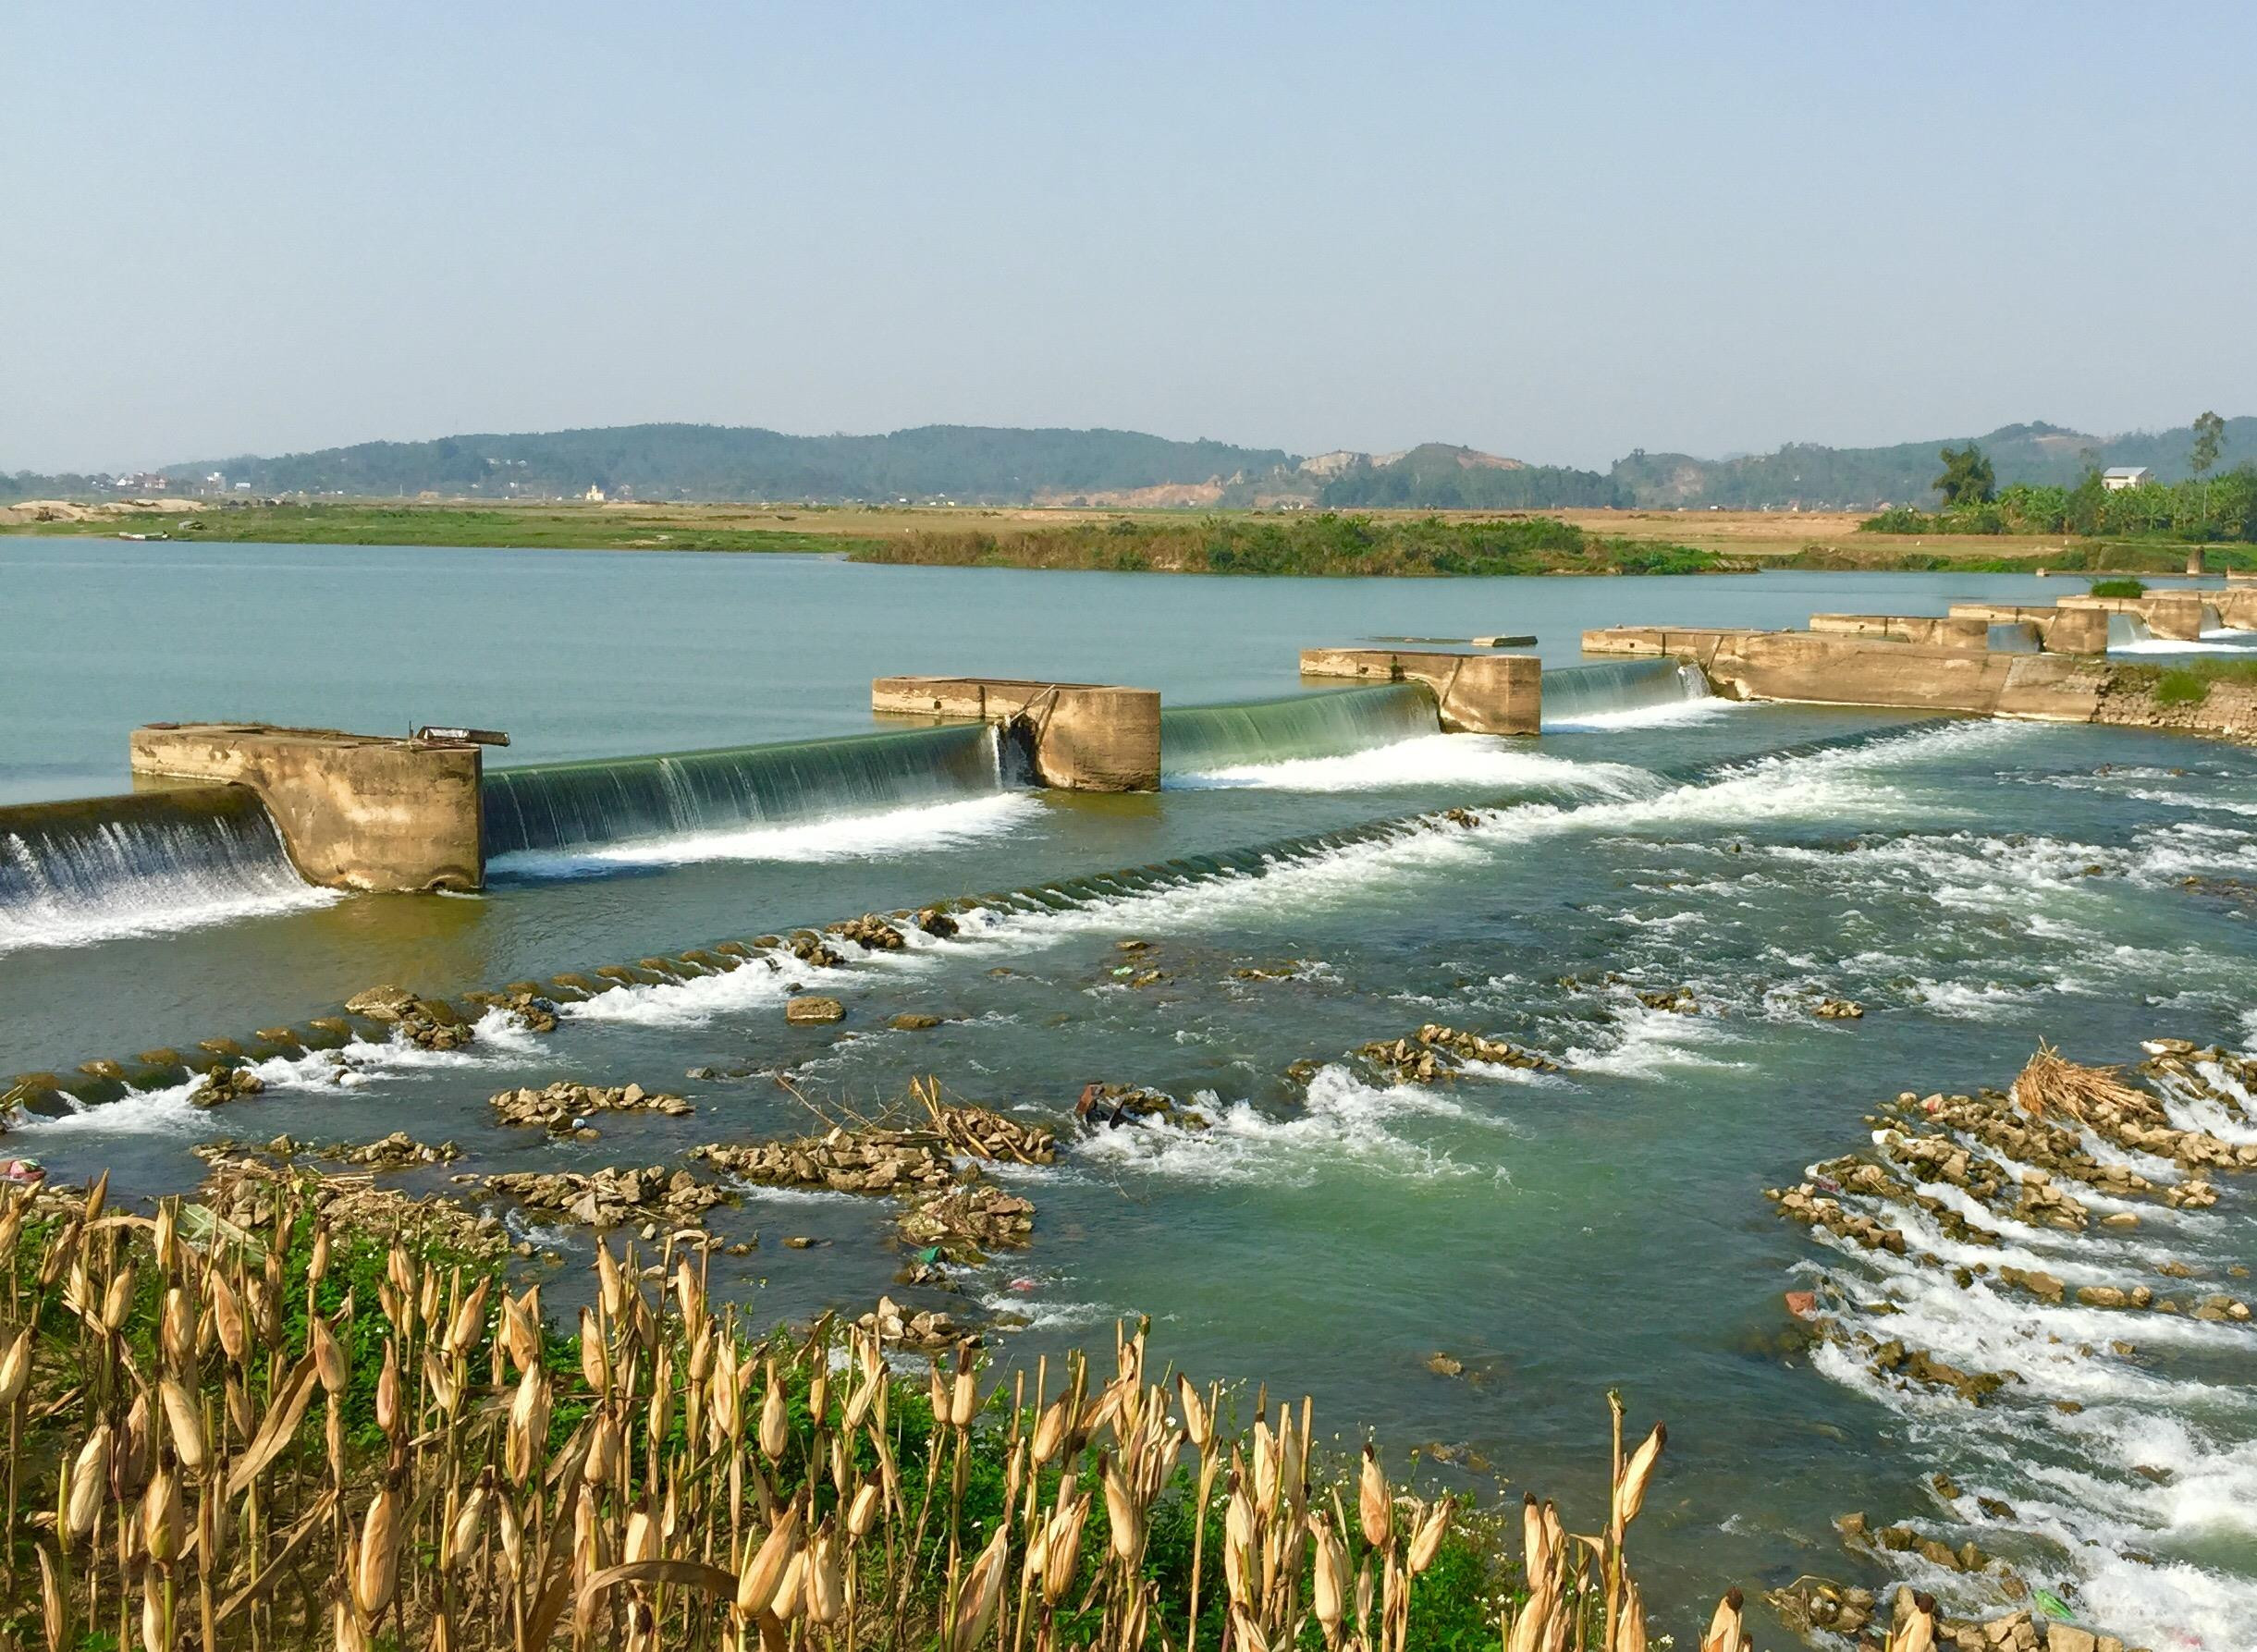 Hệ thống thủy lợi Bắc Nghệ An được Nhật Bản đầu tư vốn ODA để khôi phục, nâng cấp. Ảnh: Thu Giang